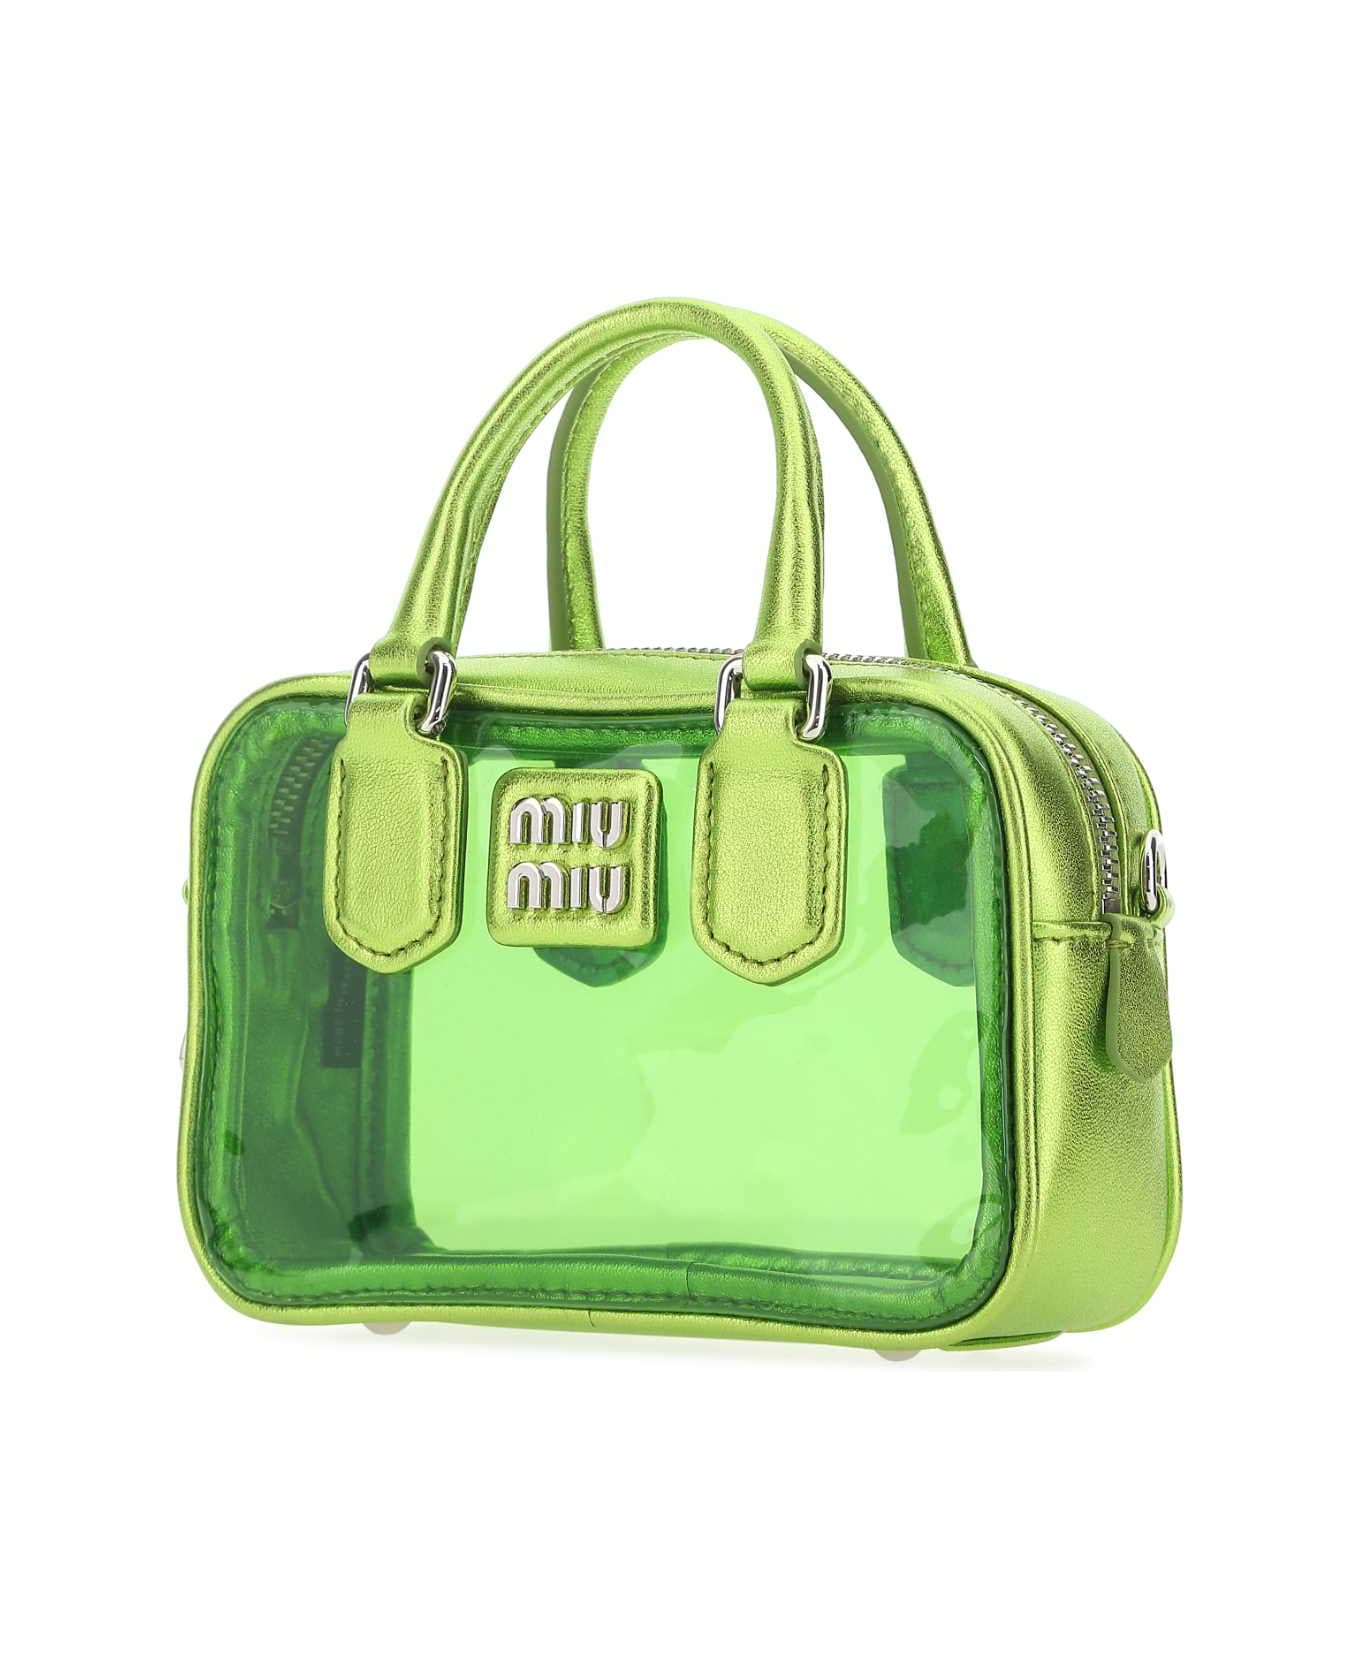 Miu Miu Green Leather And Pvc Mini Handbag - F03BQ